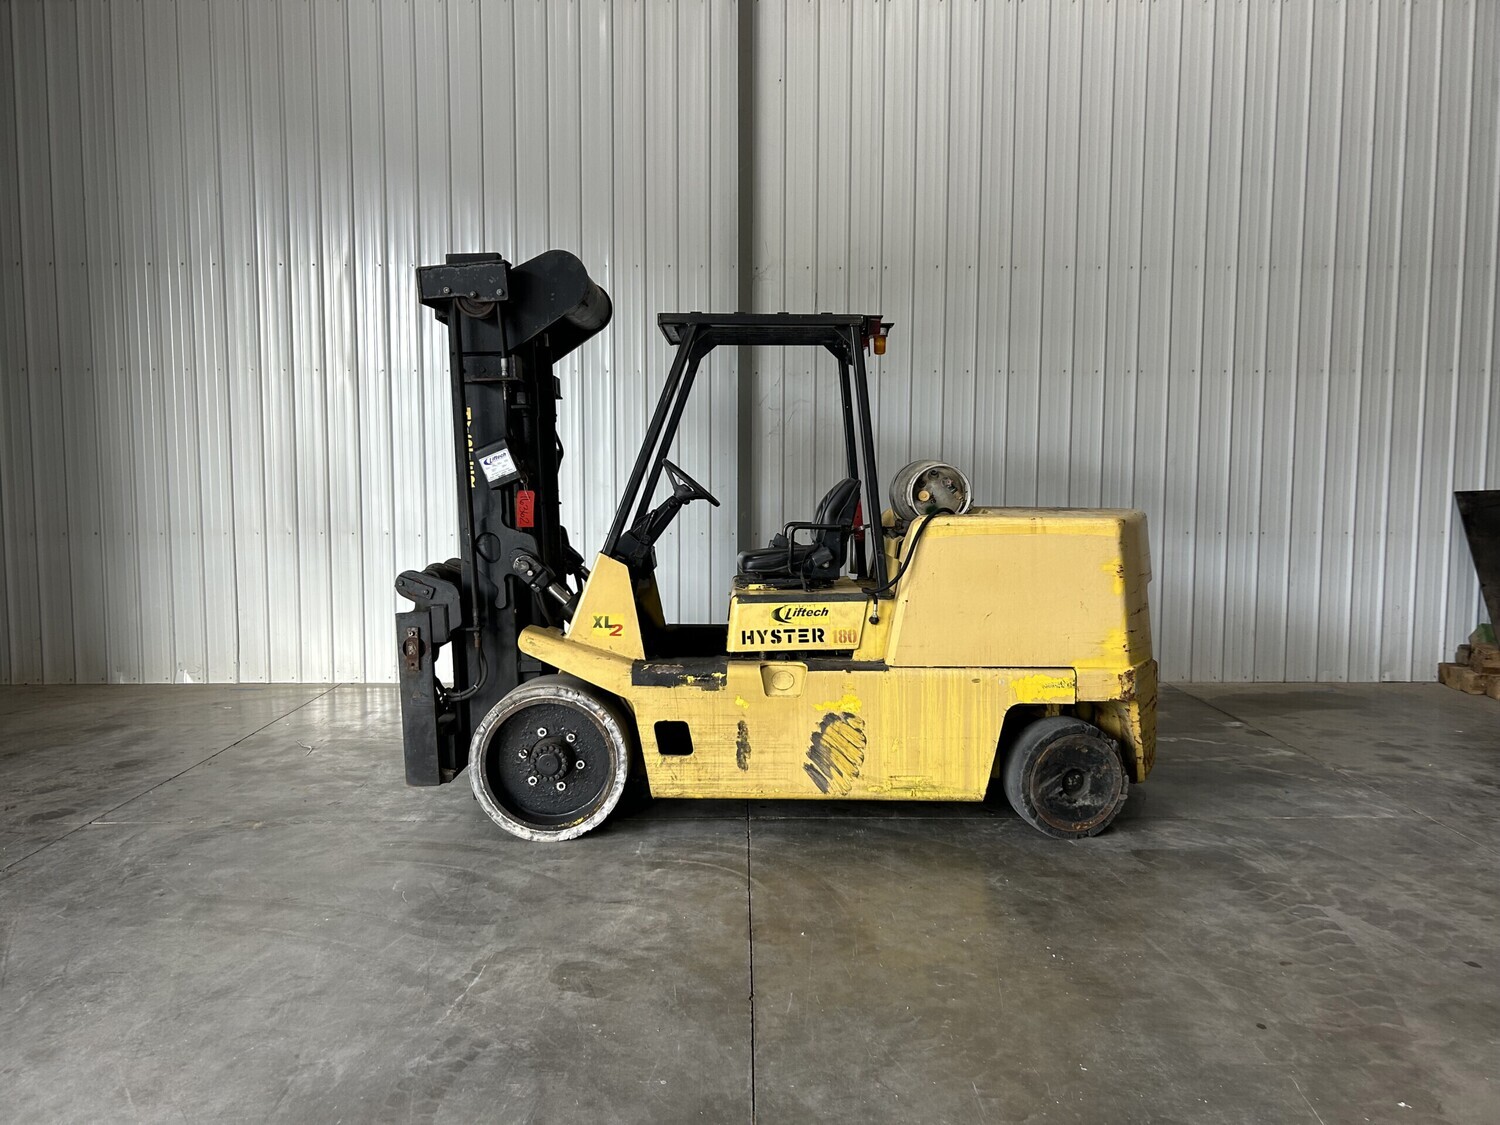 18,000 lb Hyster Forklift For Sale